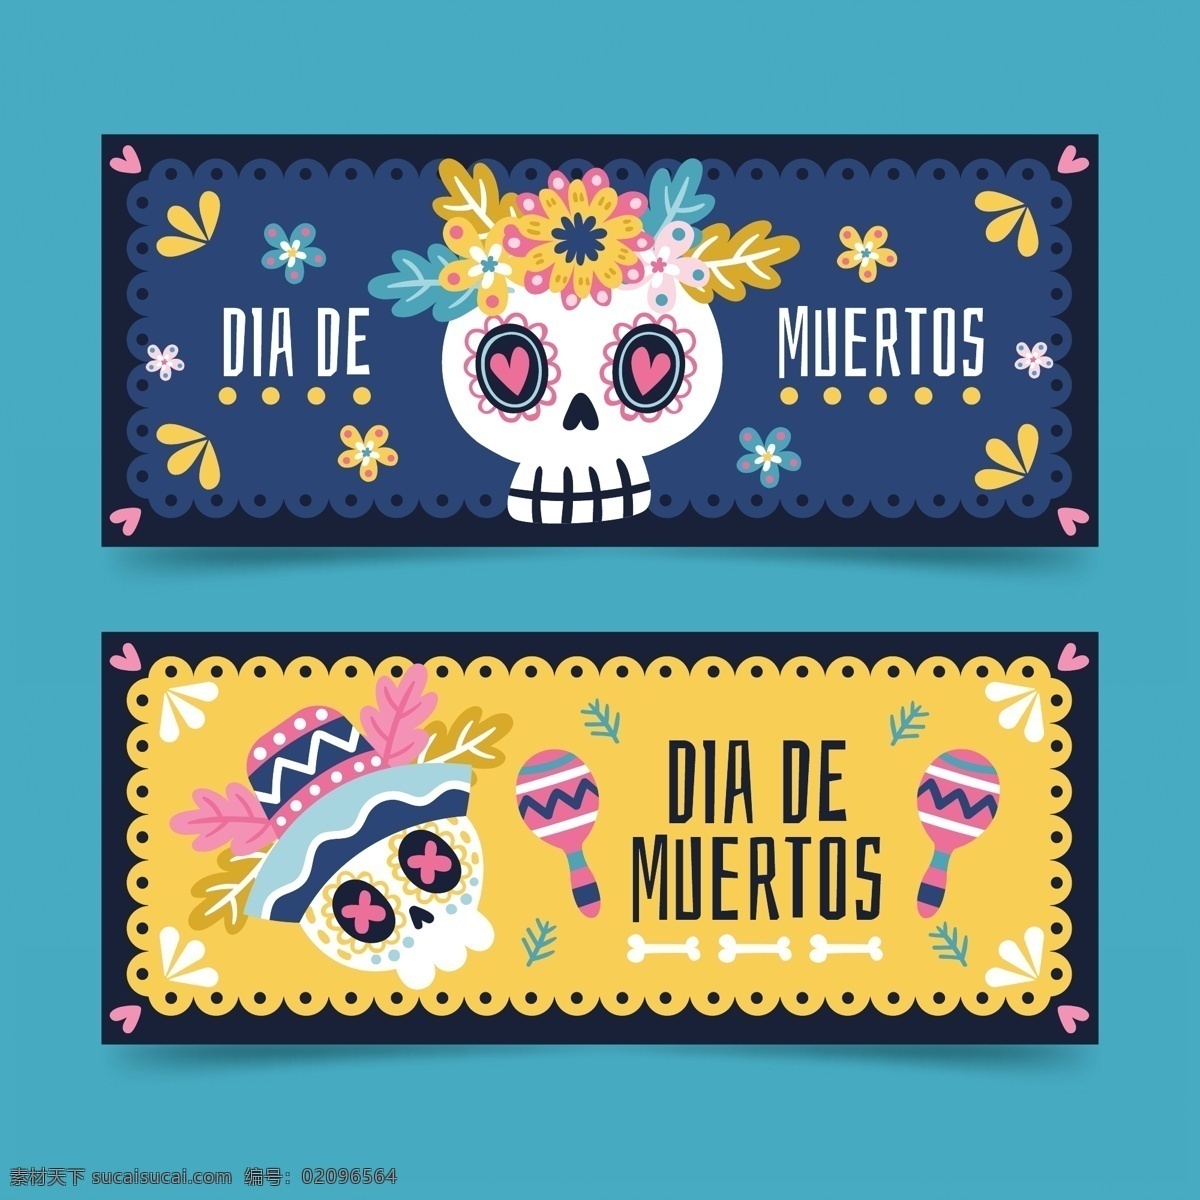 墨西哥 风格 墨西哥元素 亡灵节 墨西哥亡灵节 骷髅 插画骷髅 墨西哥土豆片 招贴设计